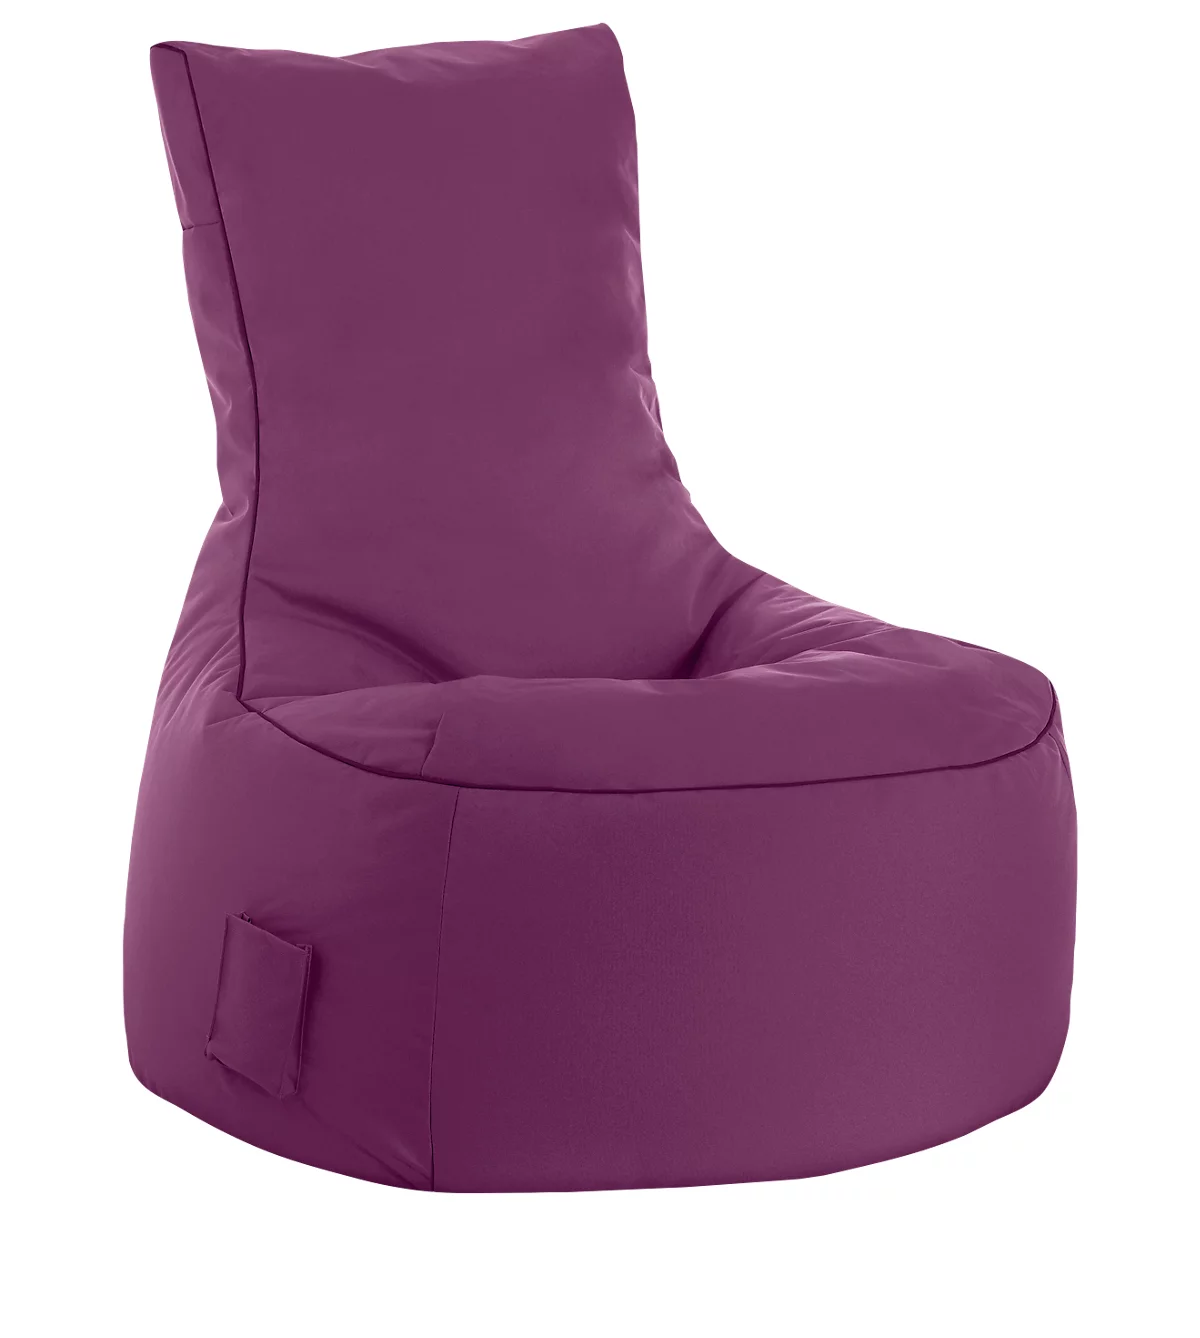 Sitzsack swing scuba®, 100% Polyester, abwaschbar, B 650 x T 900 x H 950 mm, aubergine